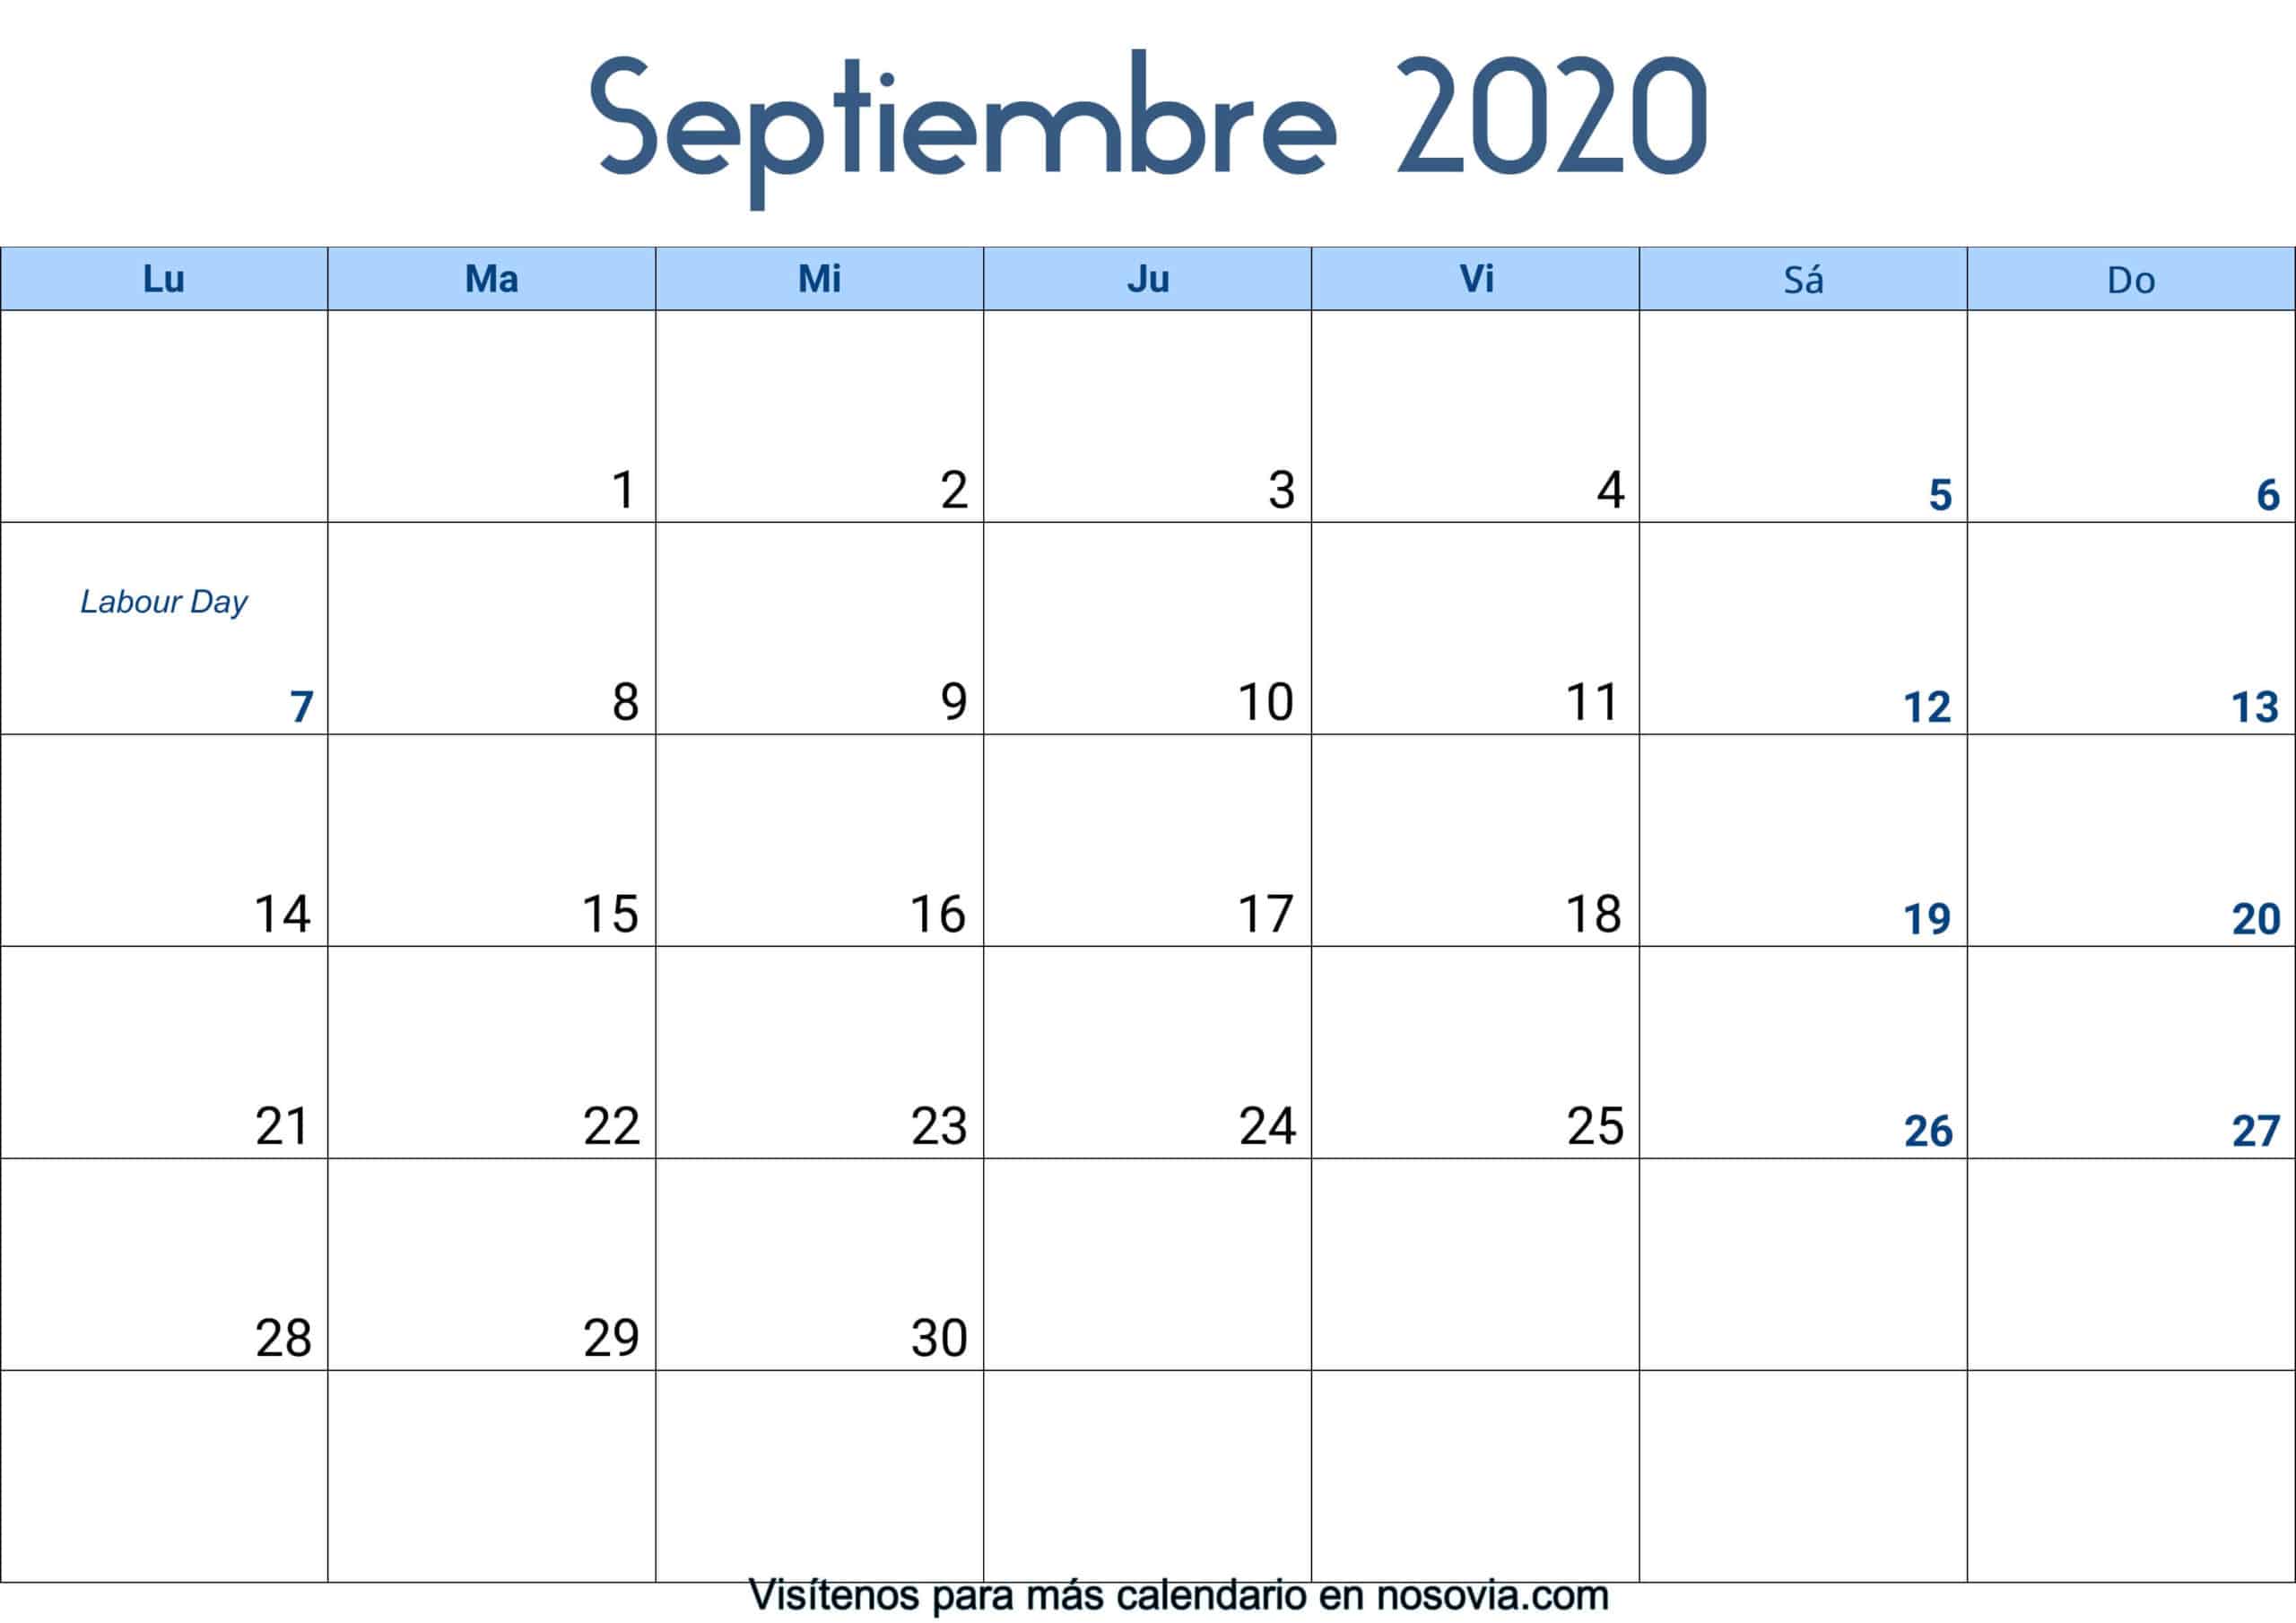 Calendario-septiembre-2020-Con-Festivos-Palabra